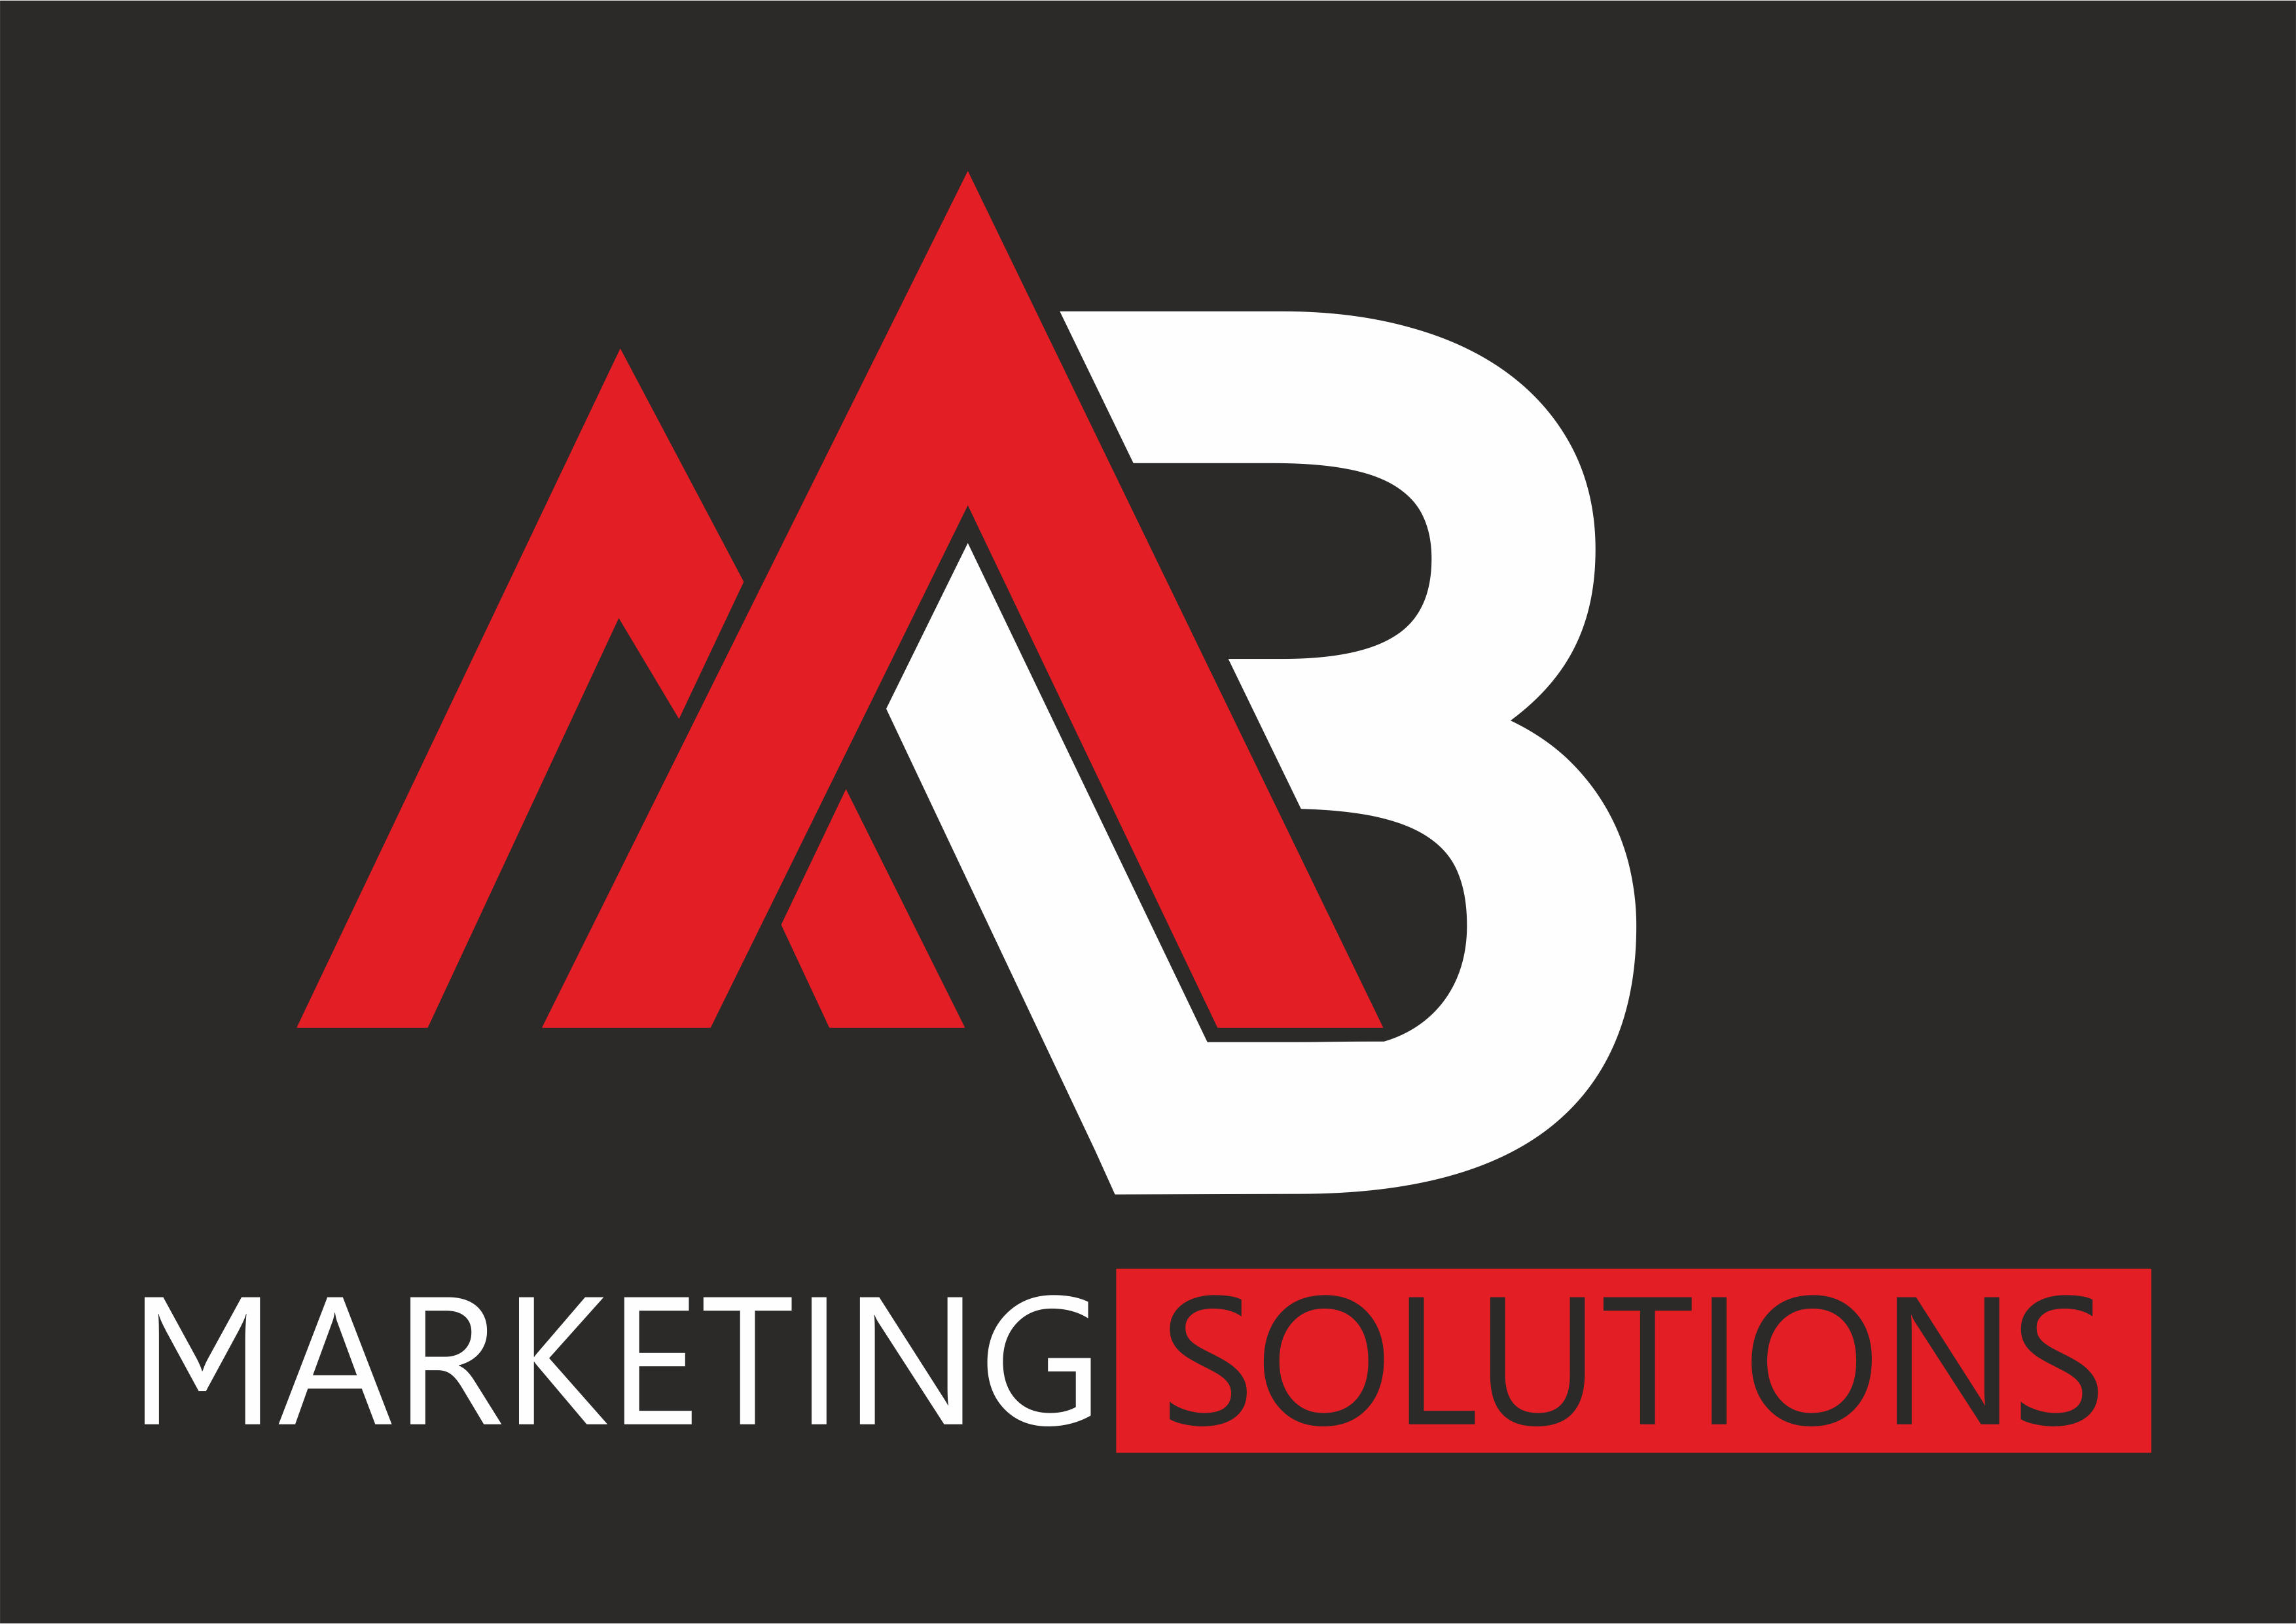 MB Marketing Solutions Mariusz Biegański